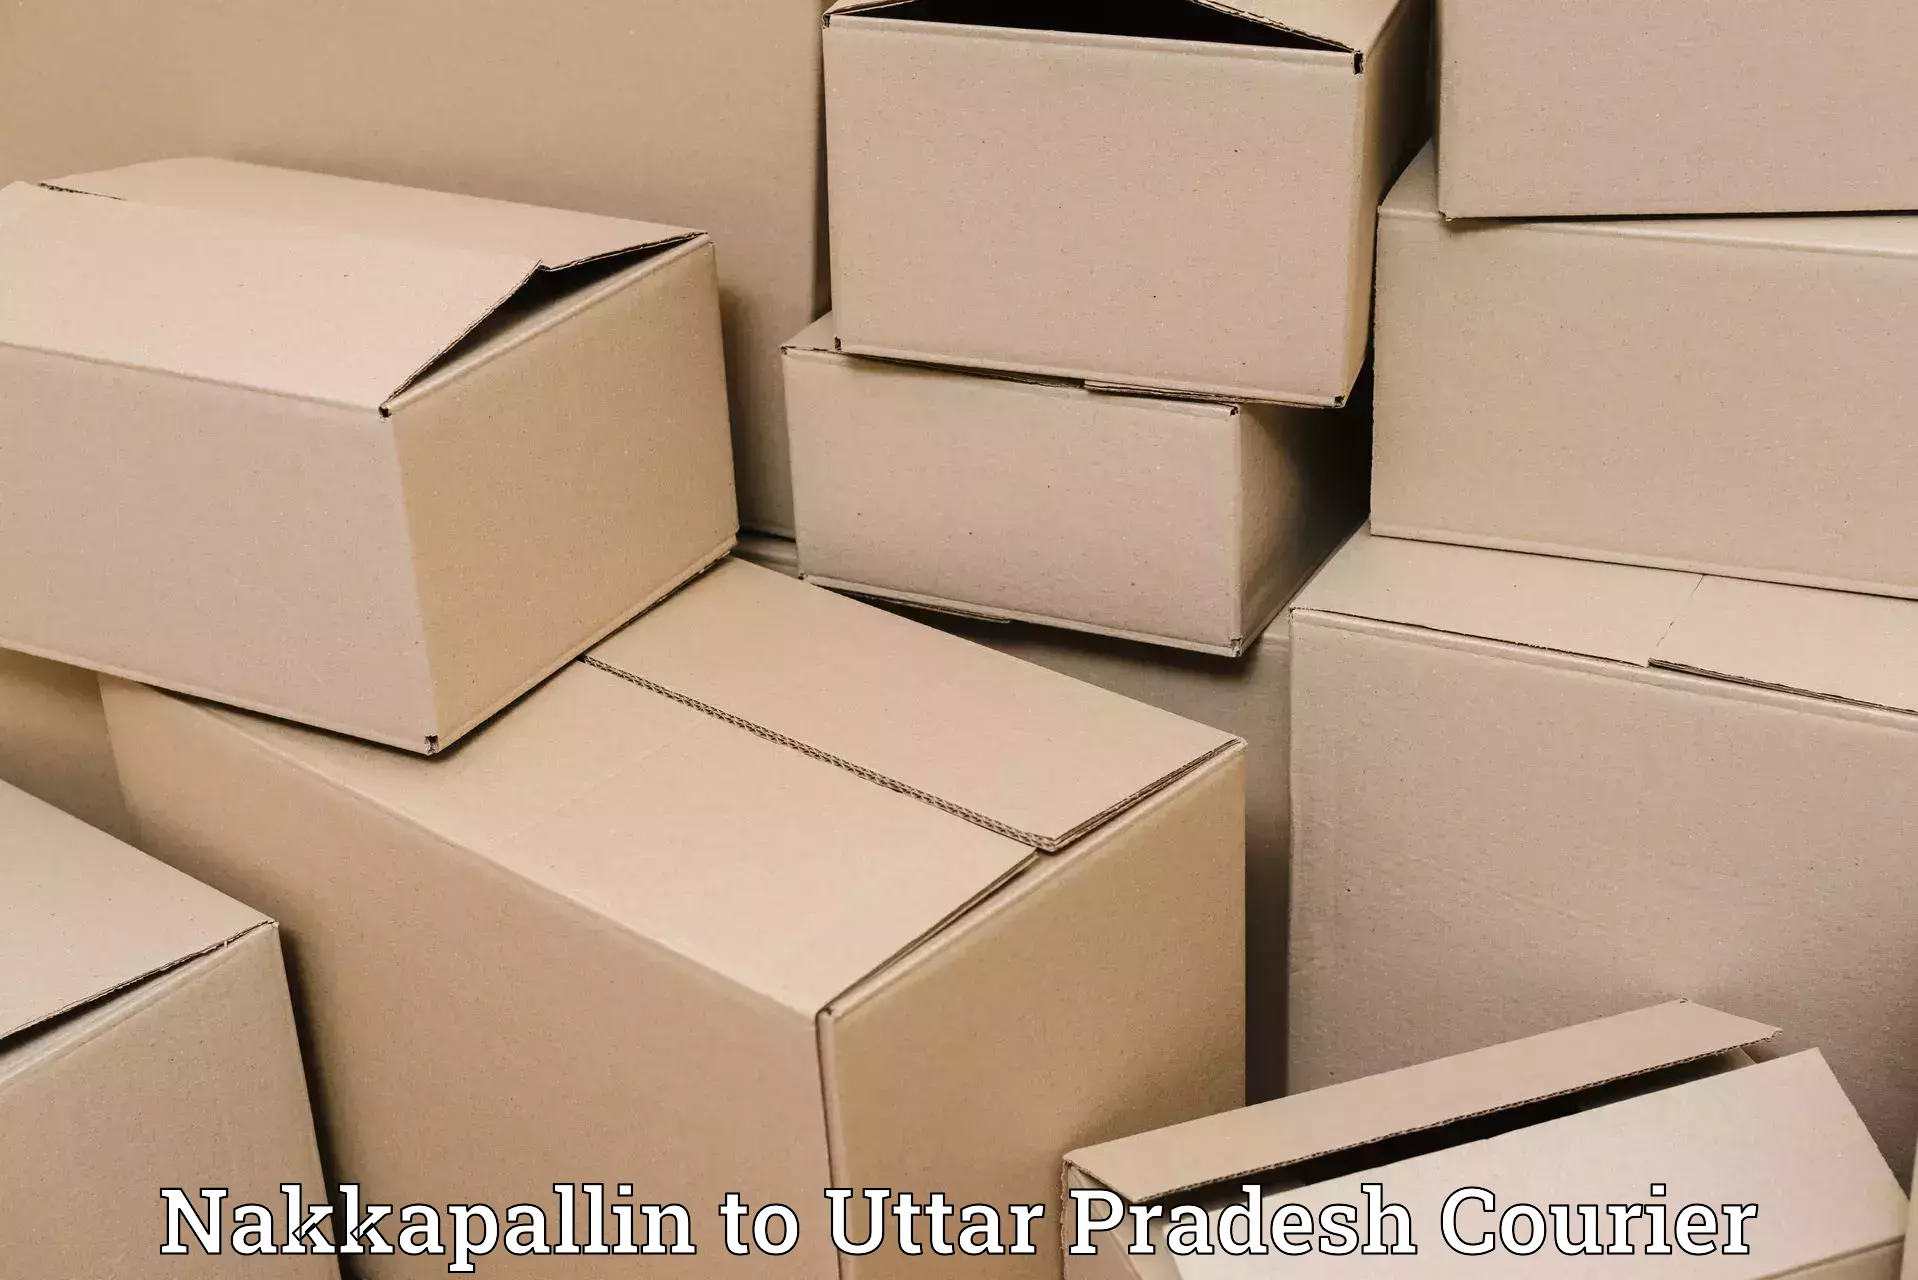 Express package handling Nakkapallin to Dadri